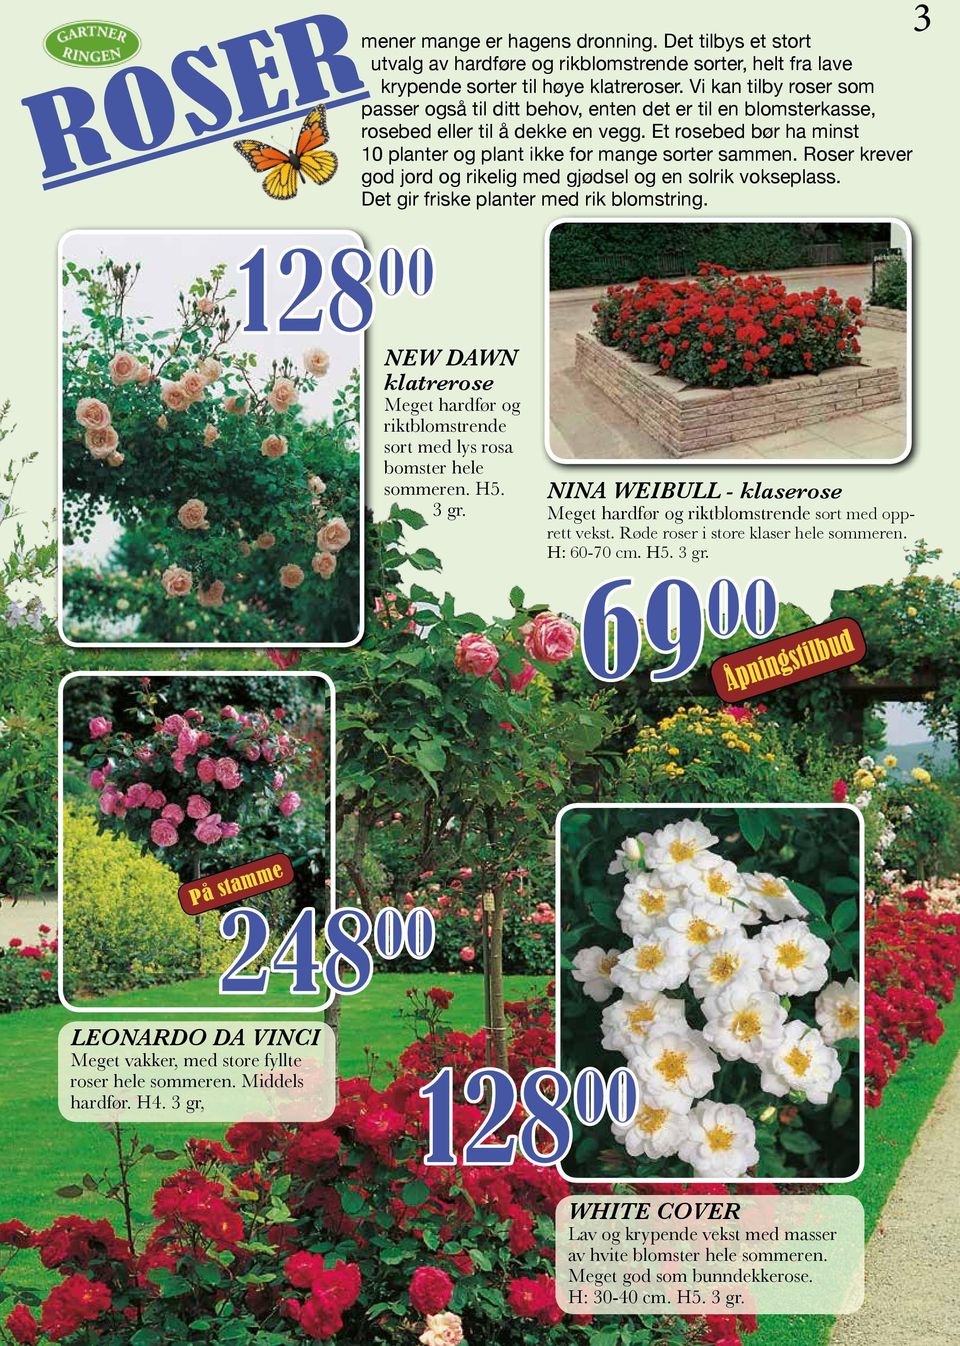 Roser krever god jord og rikelig med gjødsel og en solrik vokseplass. Det gir friske planter med rik blomstring.